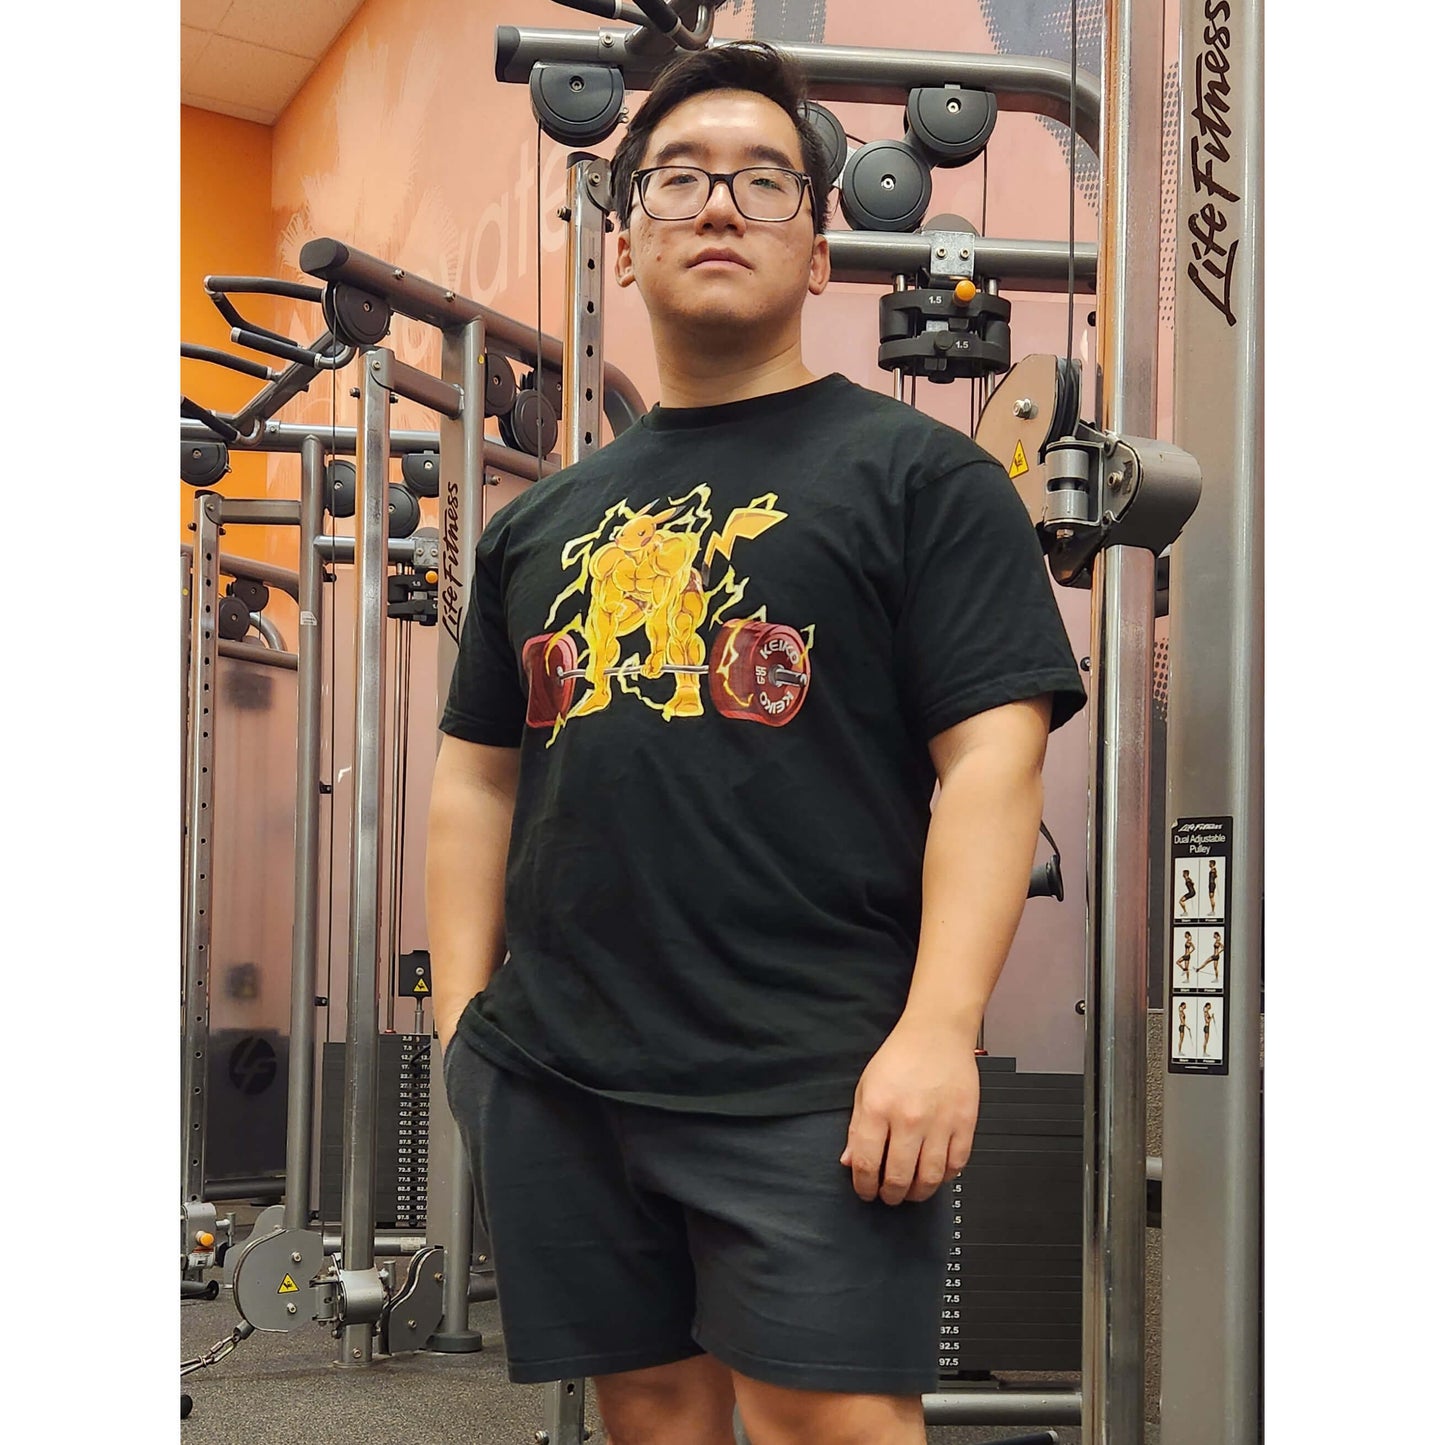 Peakachu - Swole Pokemon Gym Shirt